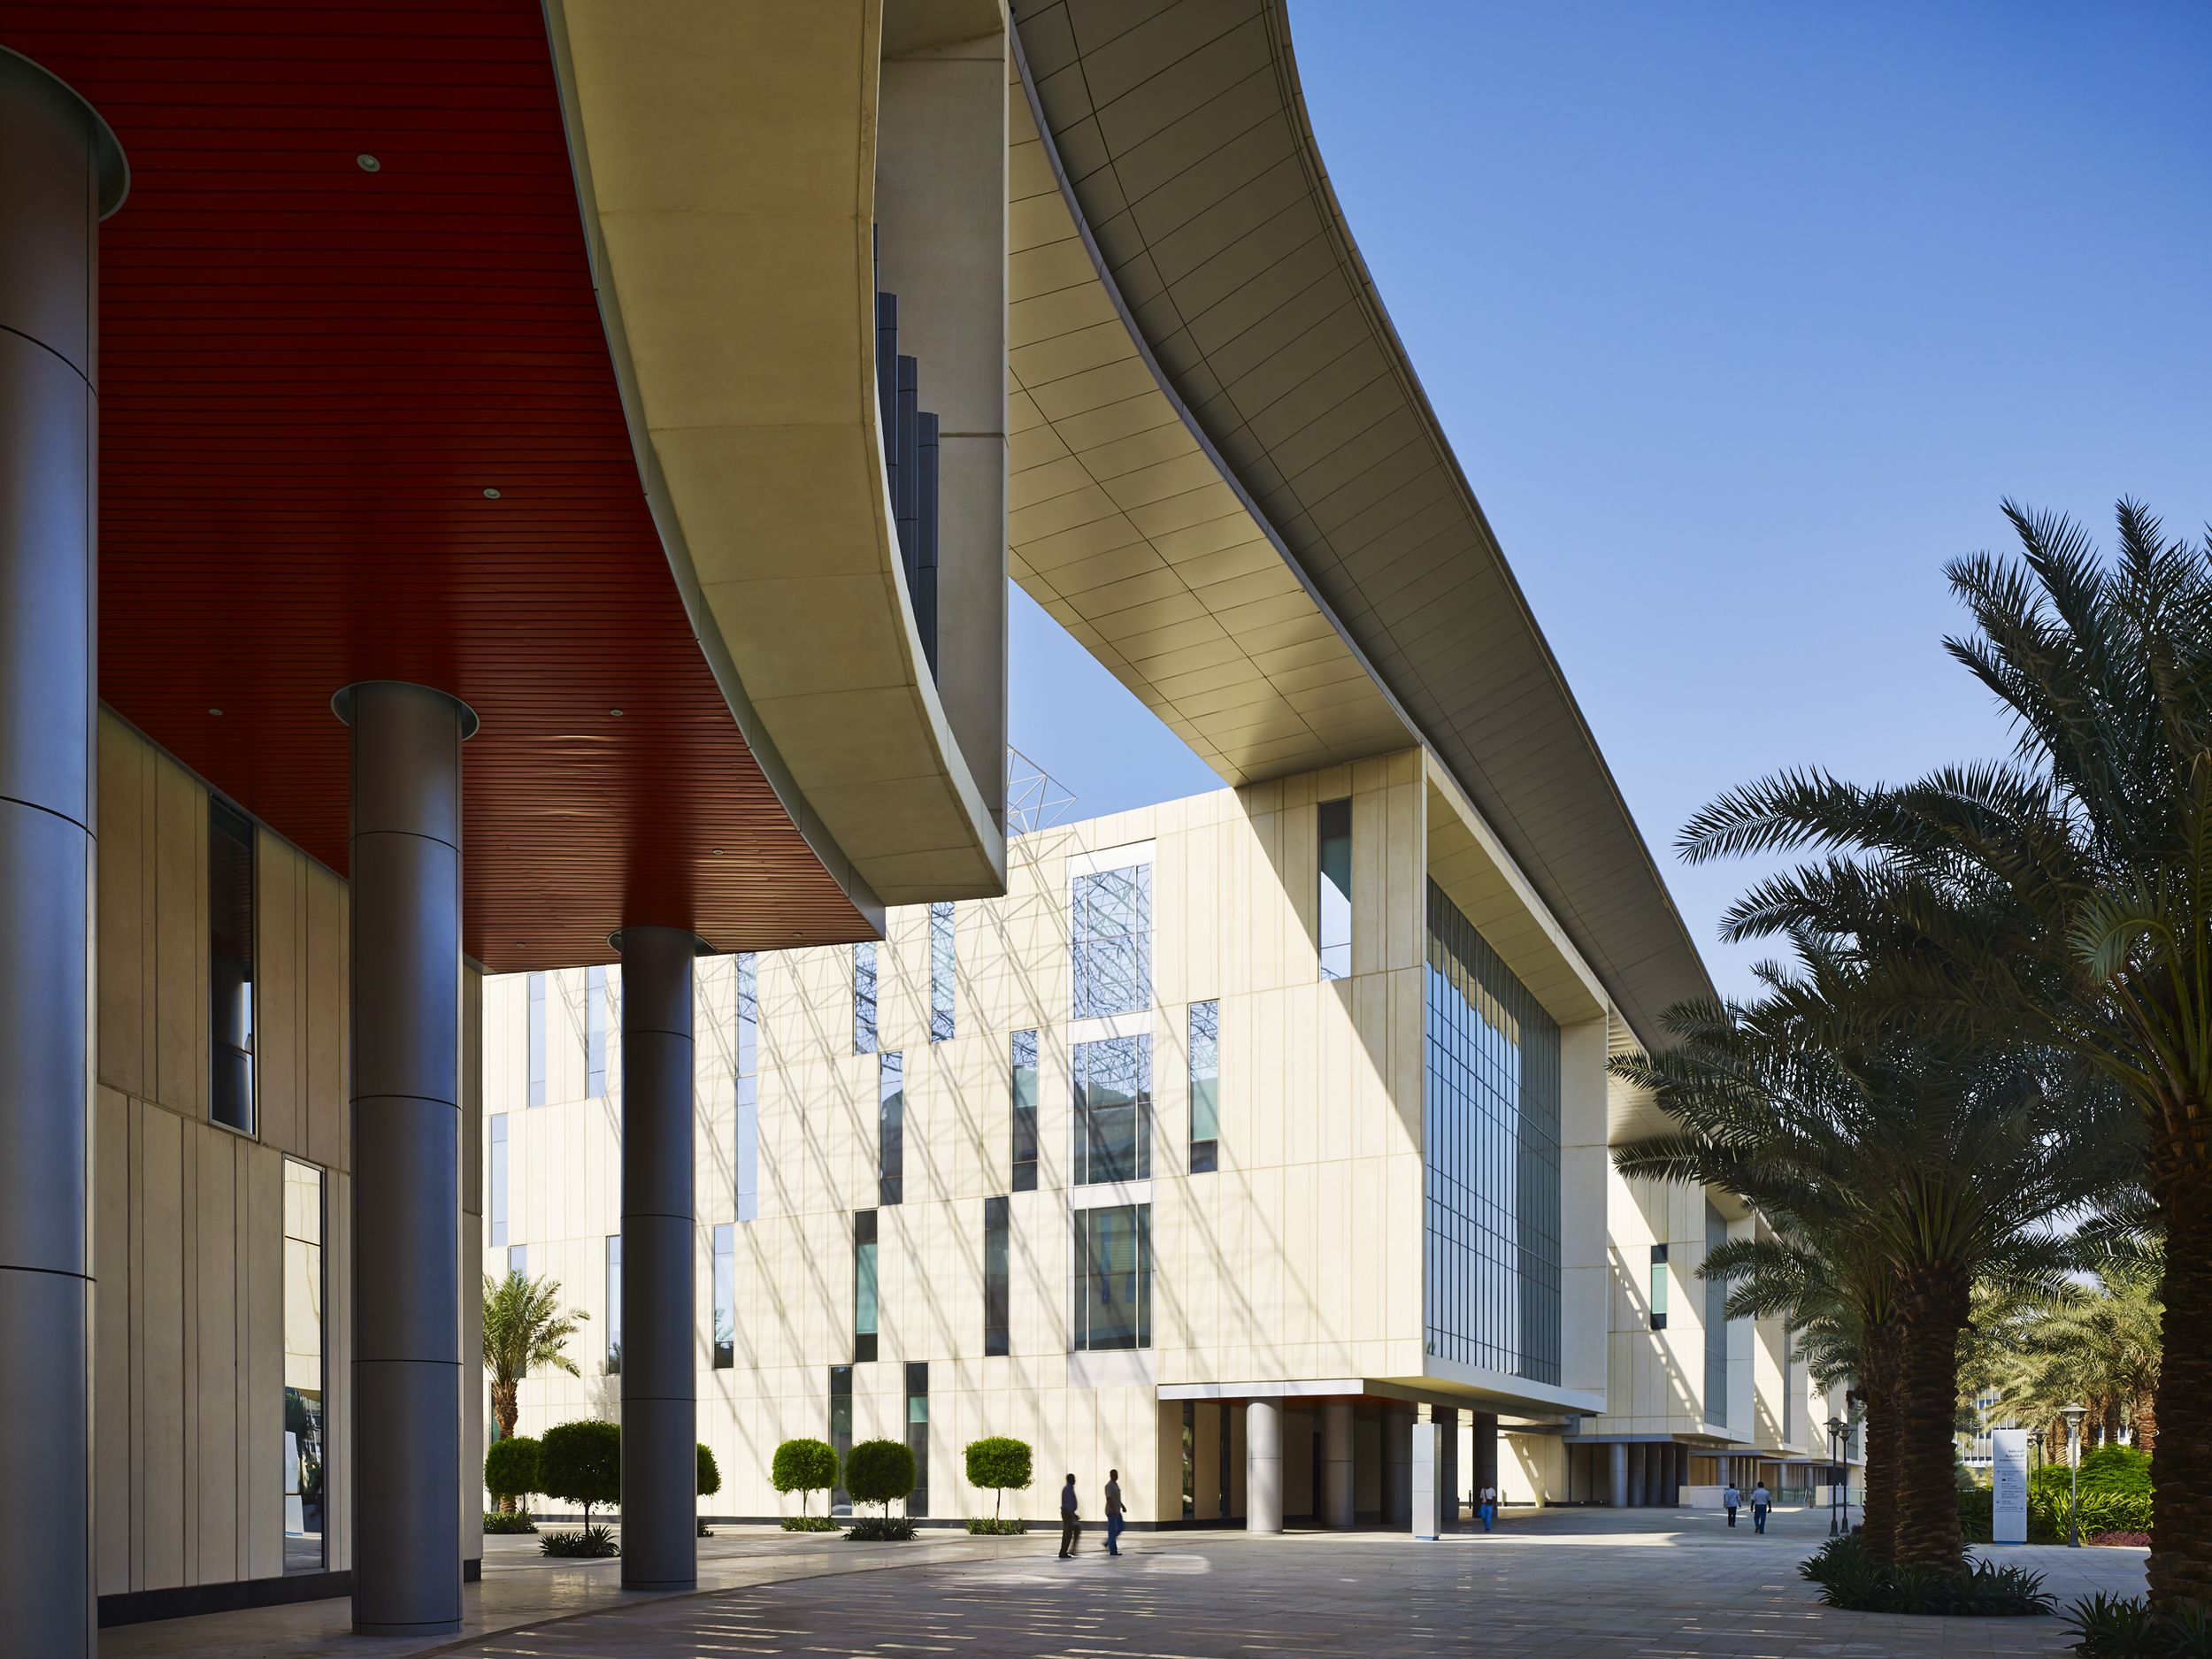  KSAU Jeddah Campus  Perkins &amp; Will  Jeddah, Saudi Arabia  &nbsp;   View Full Project  